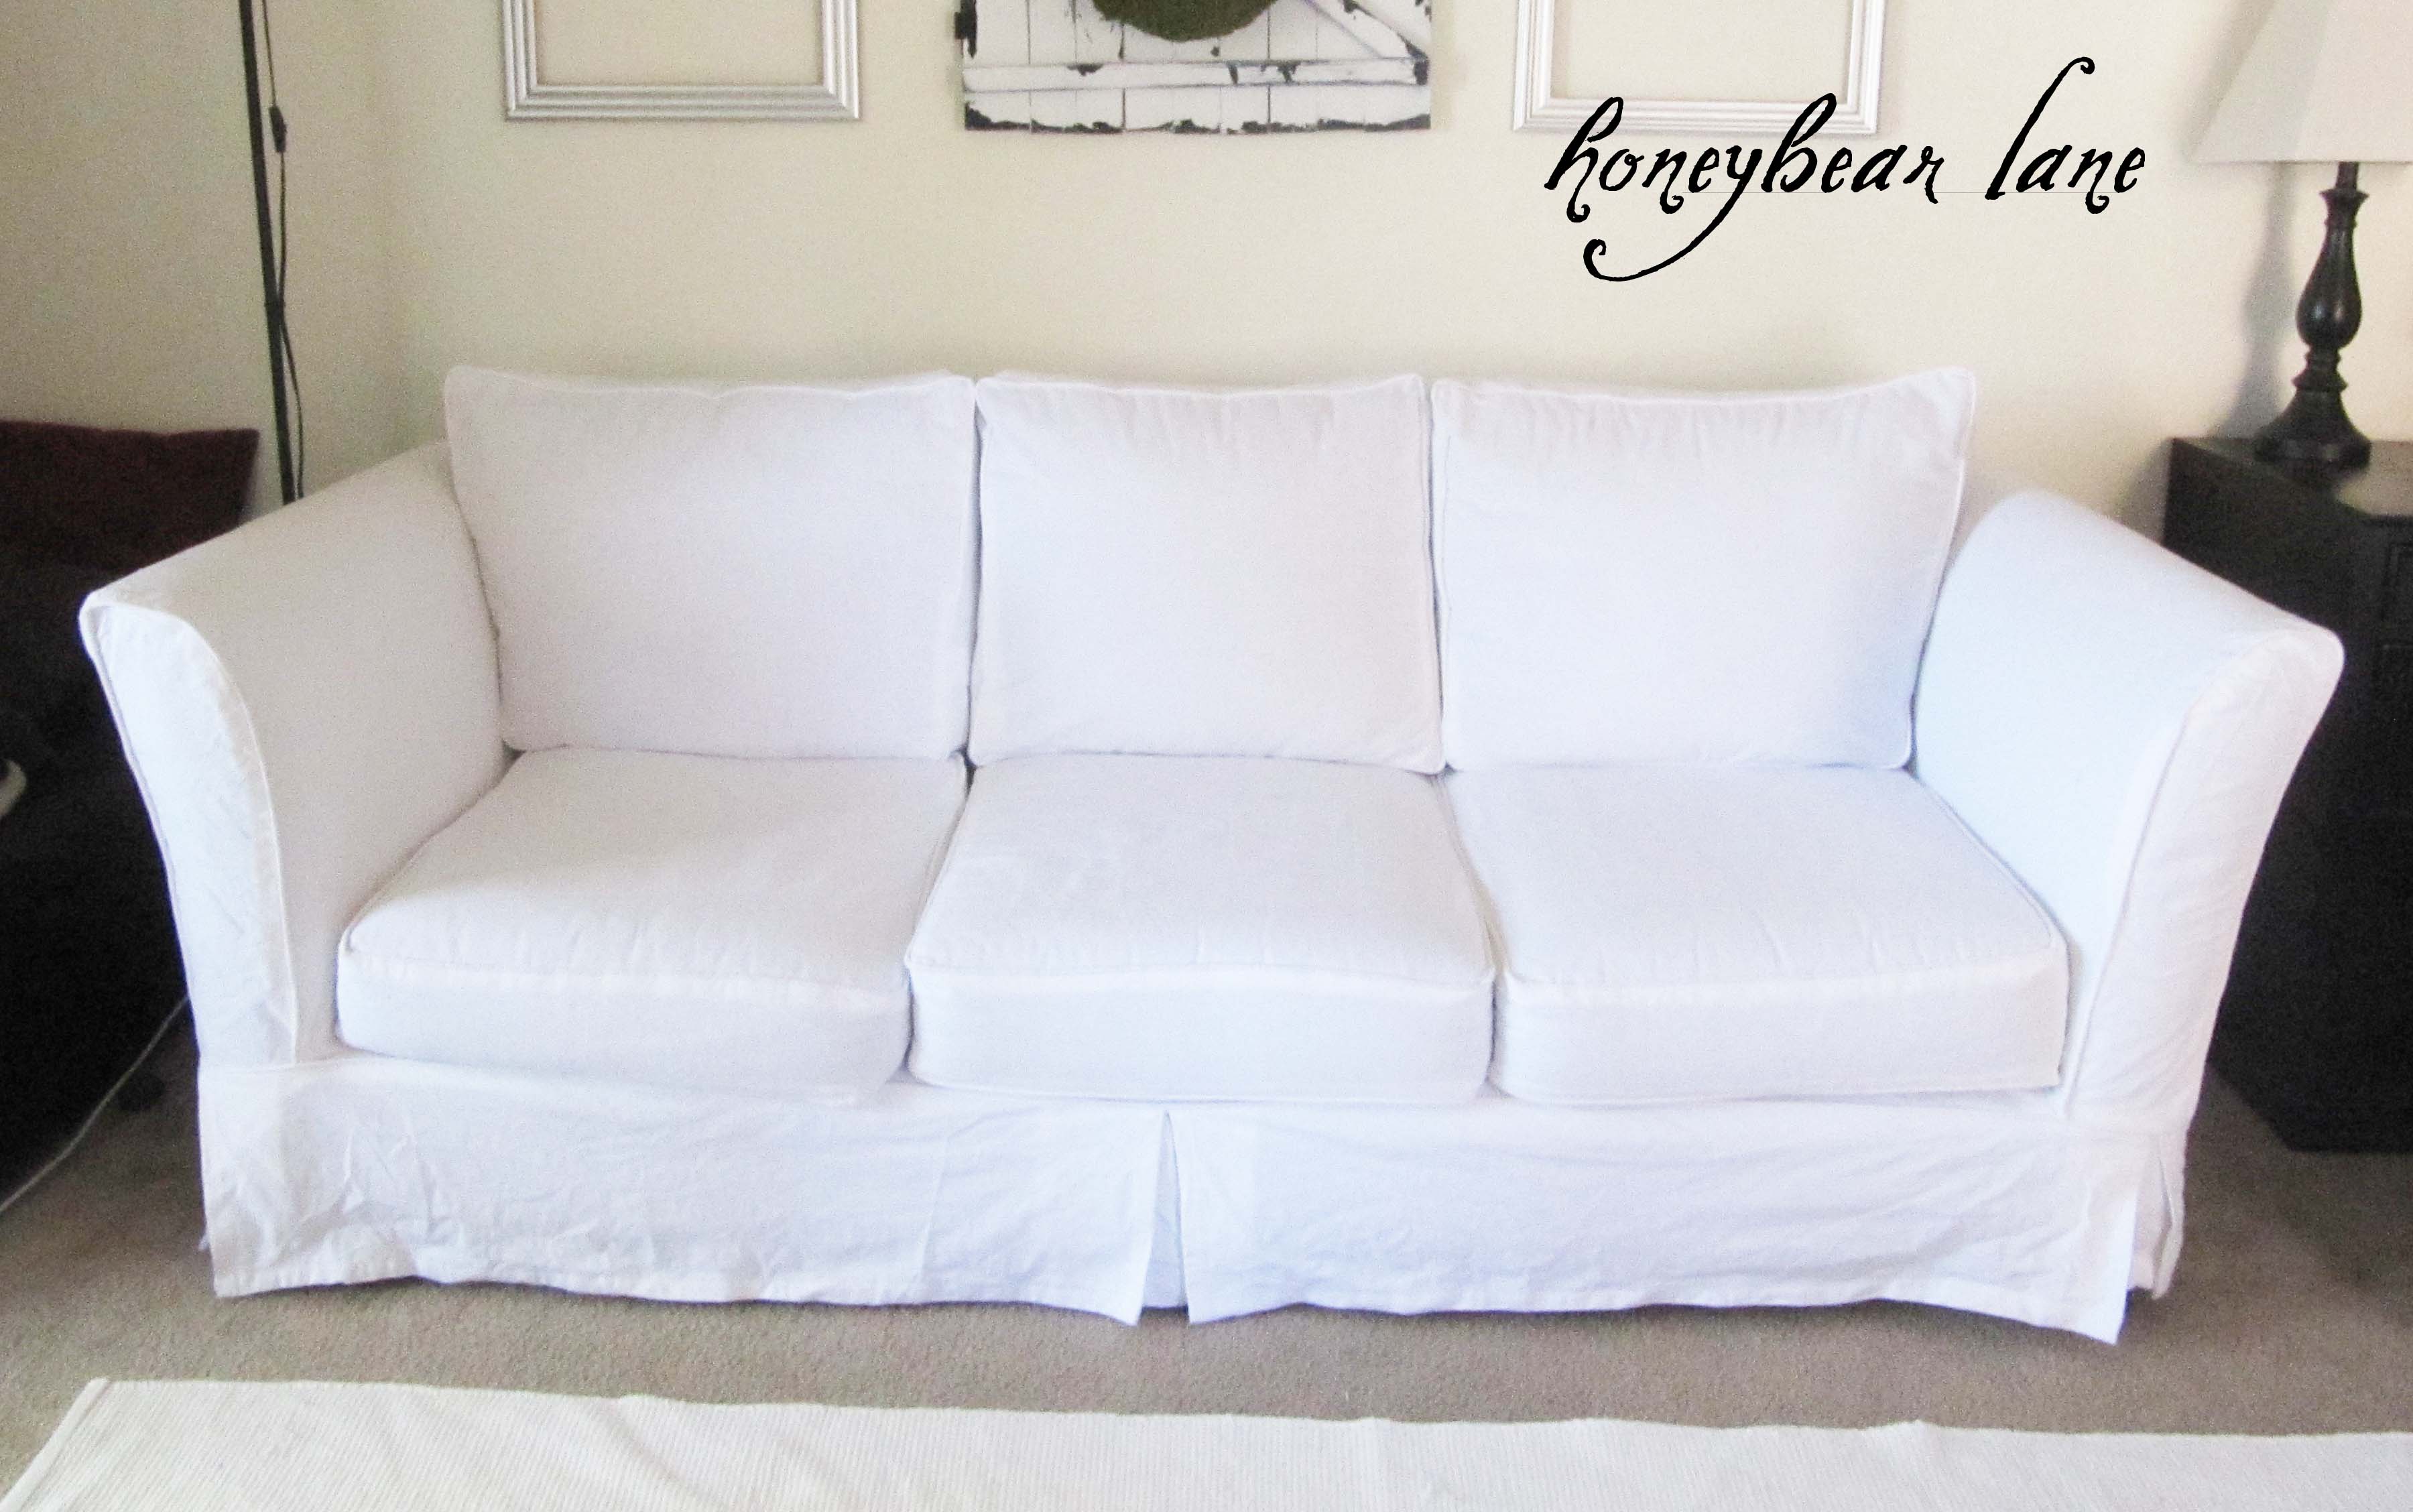 make sofa cover bed sheet